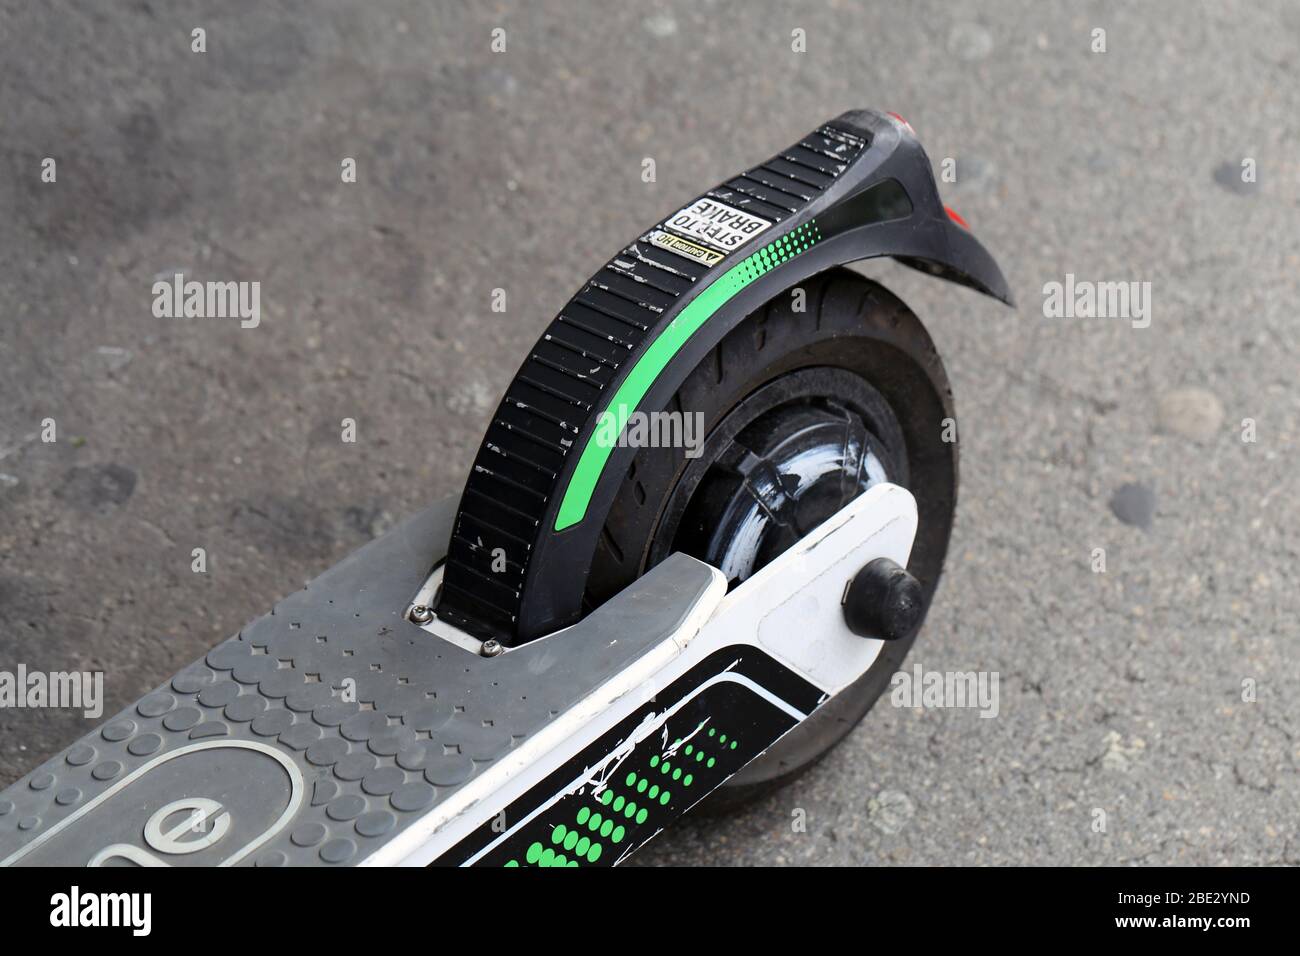 Primo piano di uno scooter elettrico a noleggio del marchio Lime. Noleggia questi scooter salti con un'app e usali in molte grandi città come Zürich Svizzera. Foto Stock